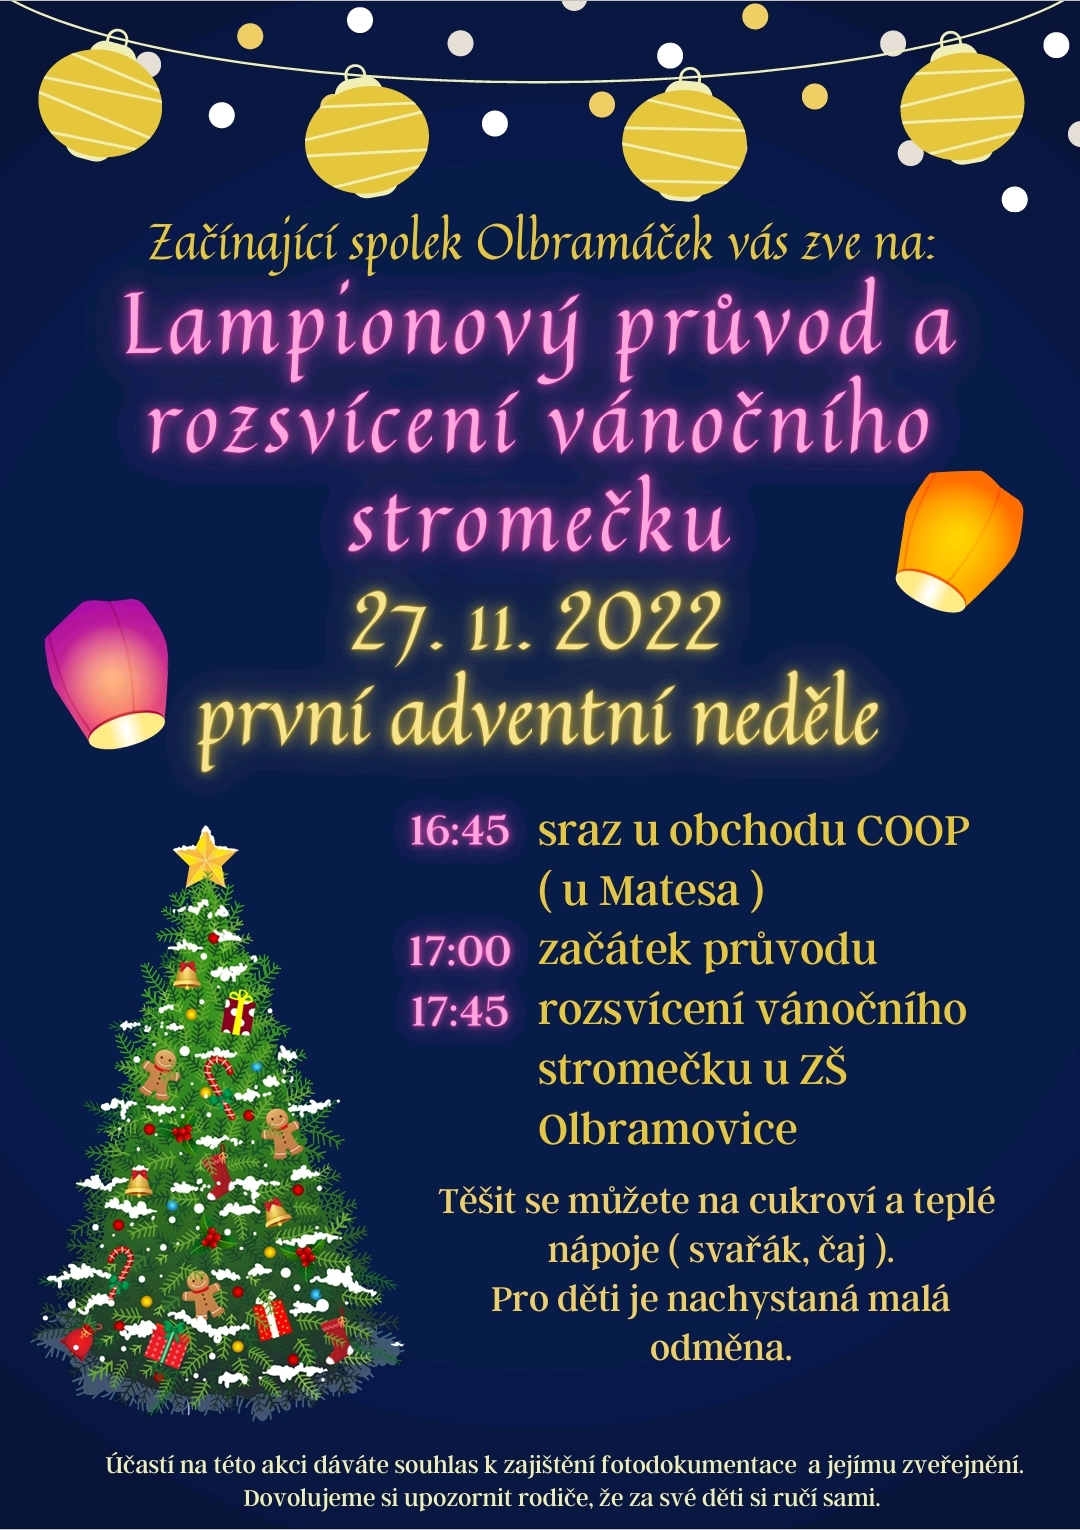 Lampionový průvod a rozsvicení ván. stromku 27. 11. 2022